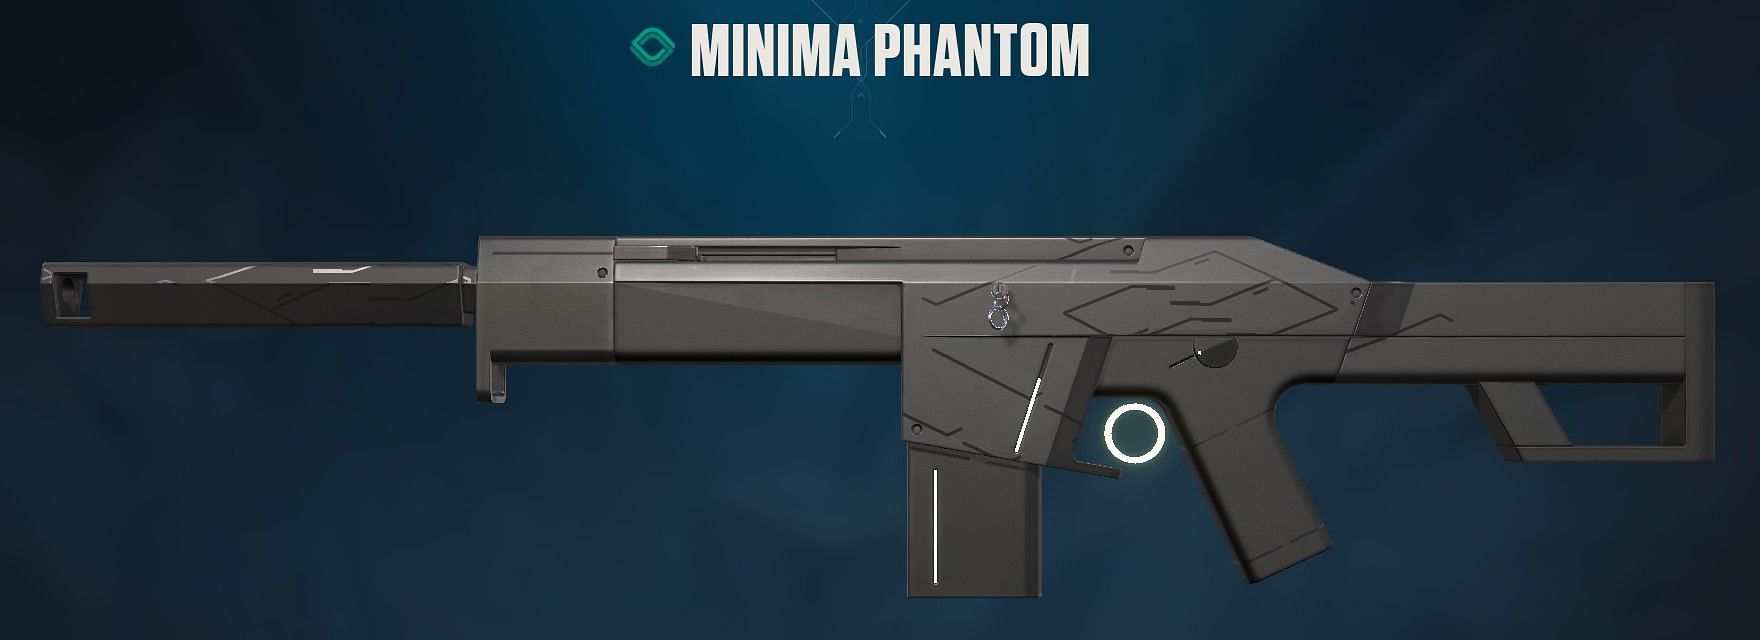 Minima Phantom (Image via Riot Games)